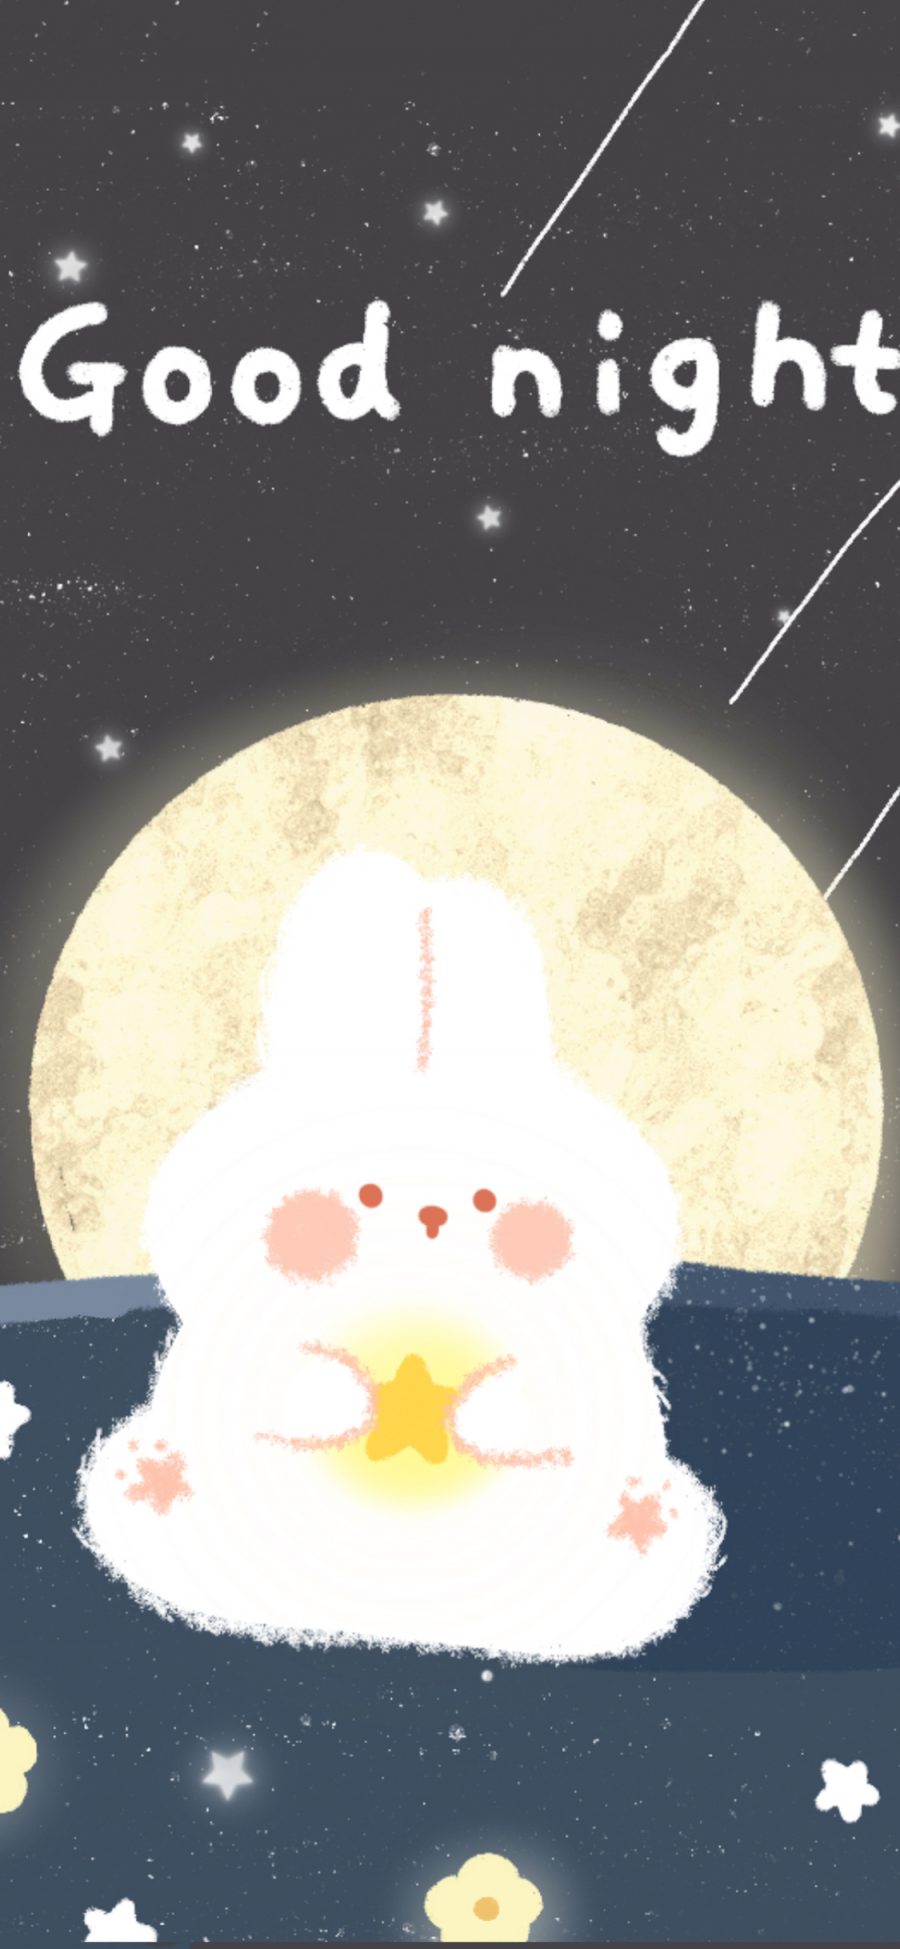 [2436×1125]可爱 兔子 晚安 good night 苹果手机动漫壁纸图片